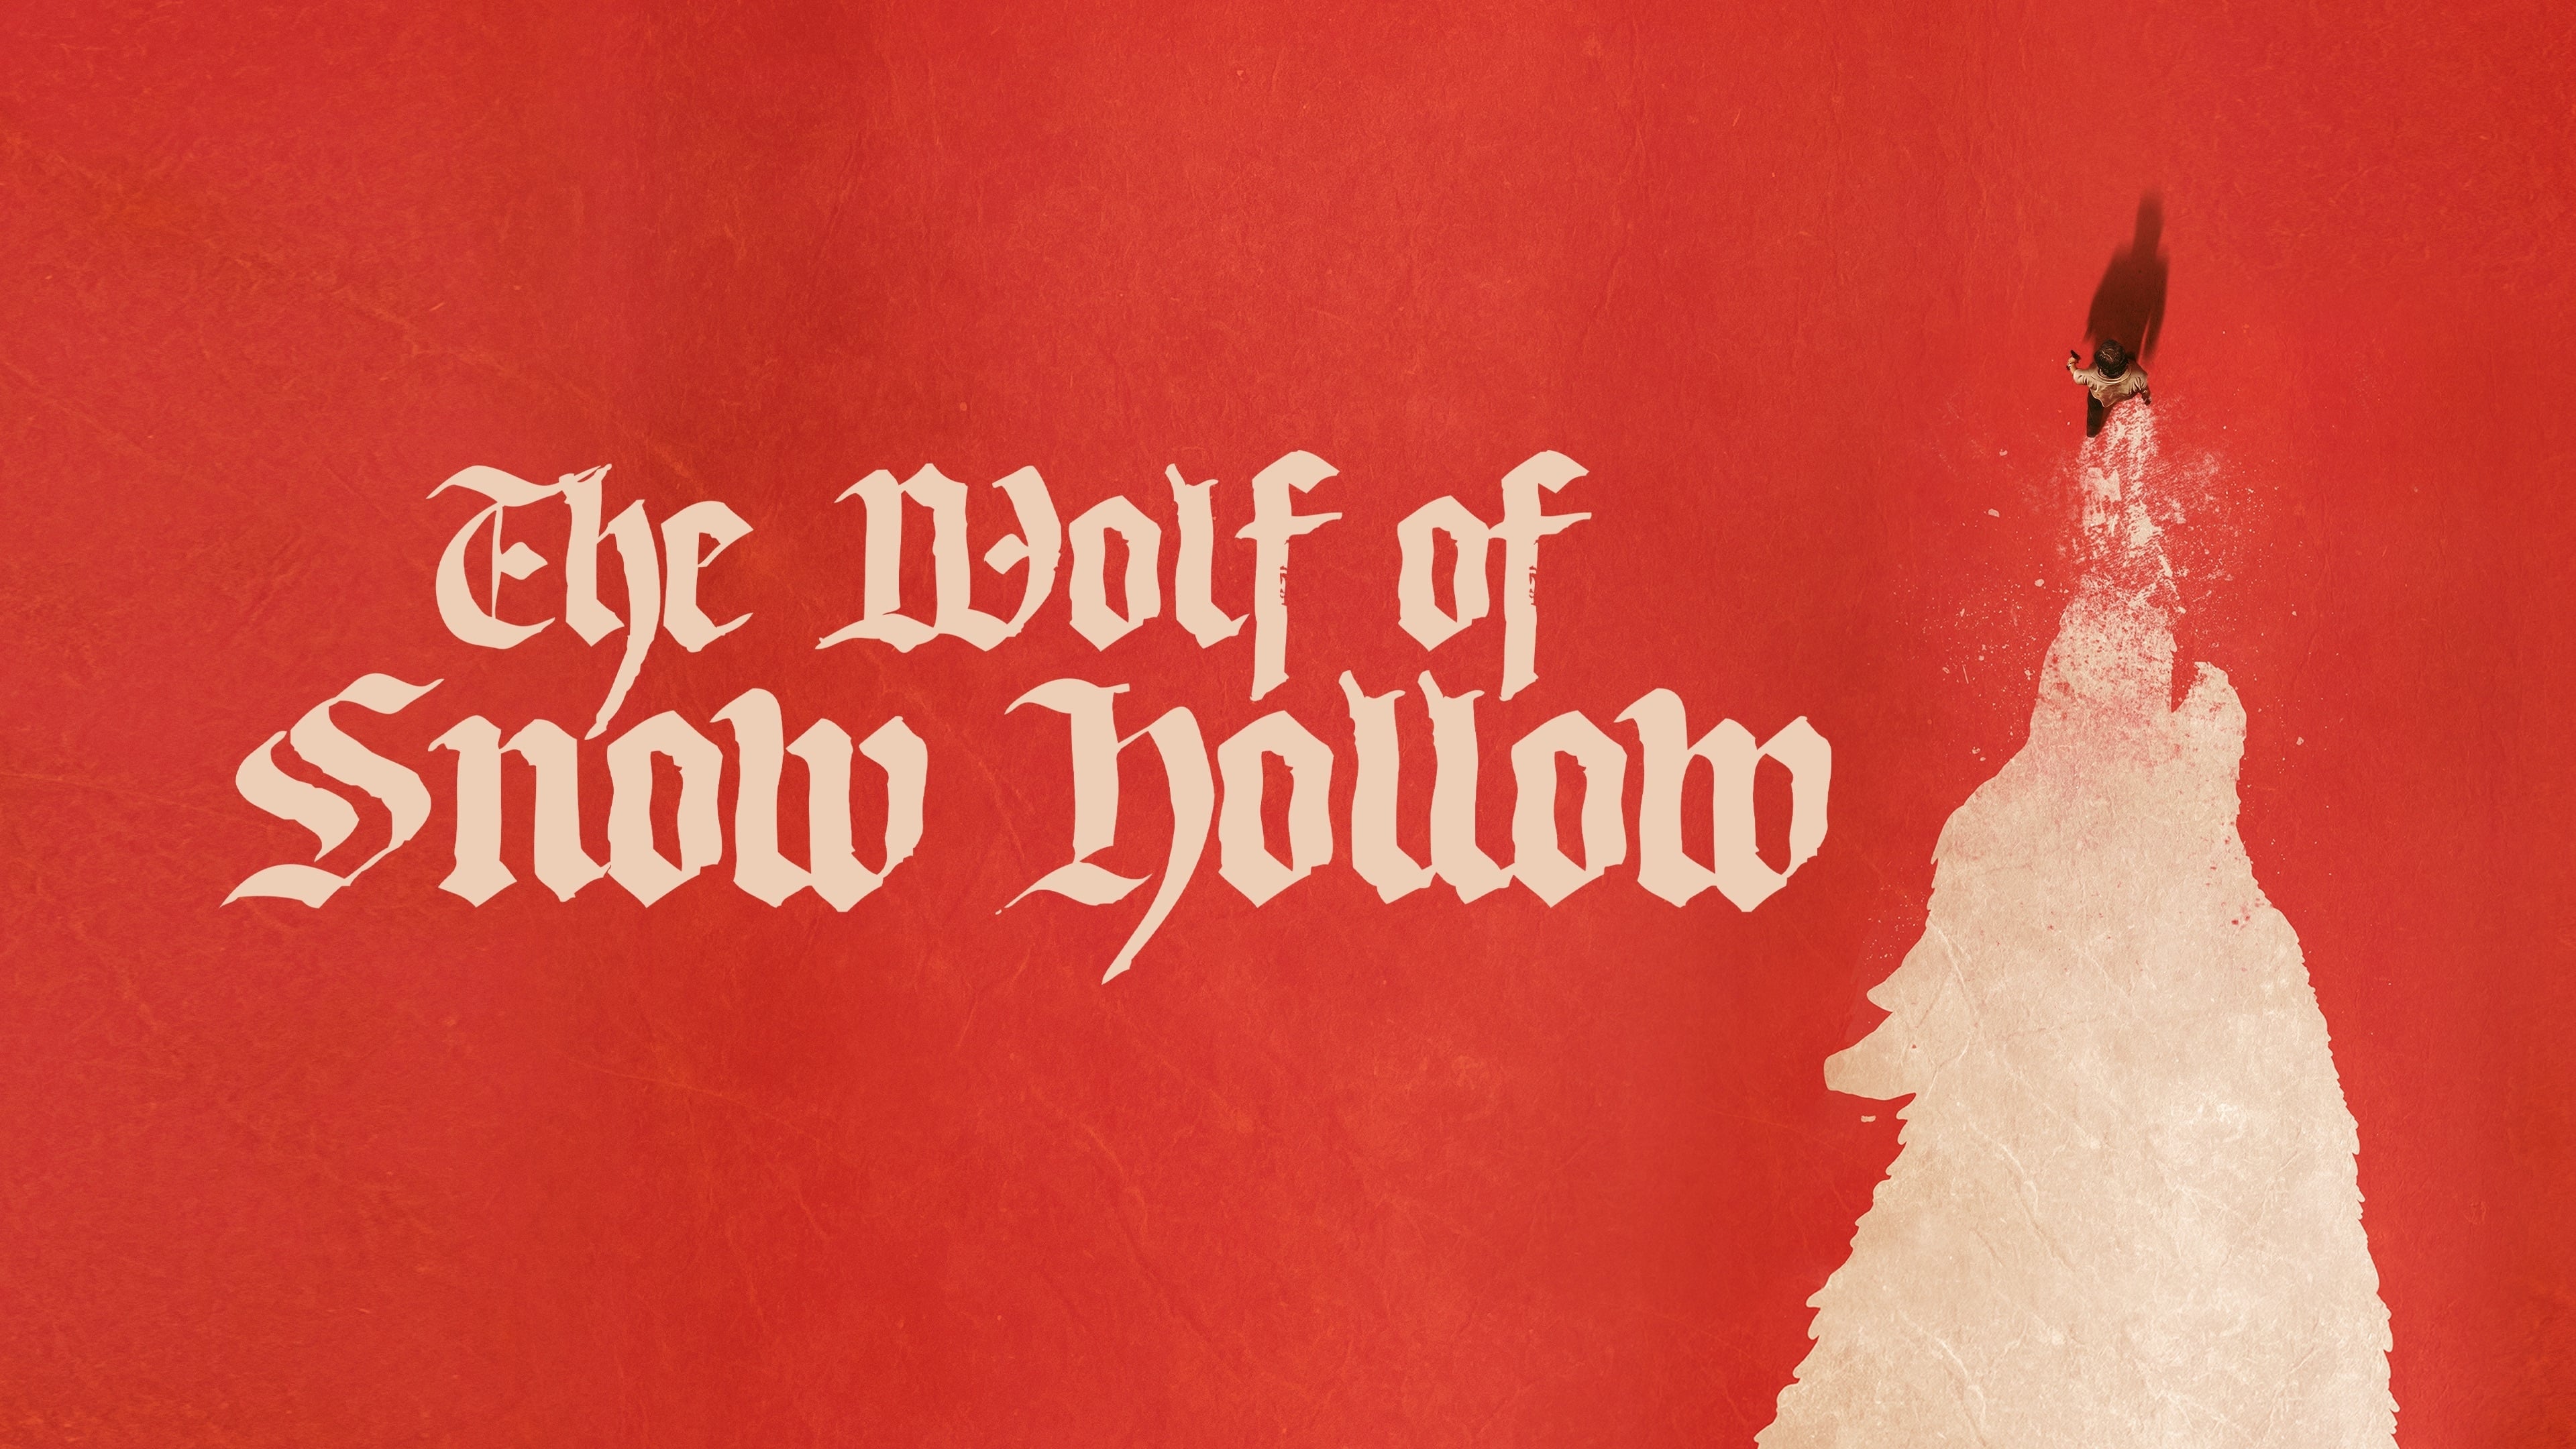 El lobo de Snow Hollow